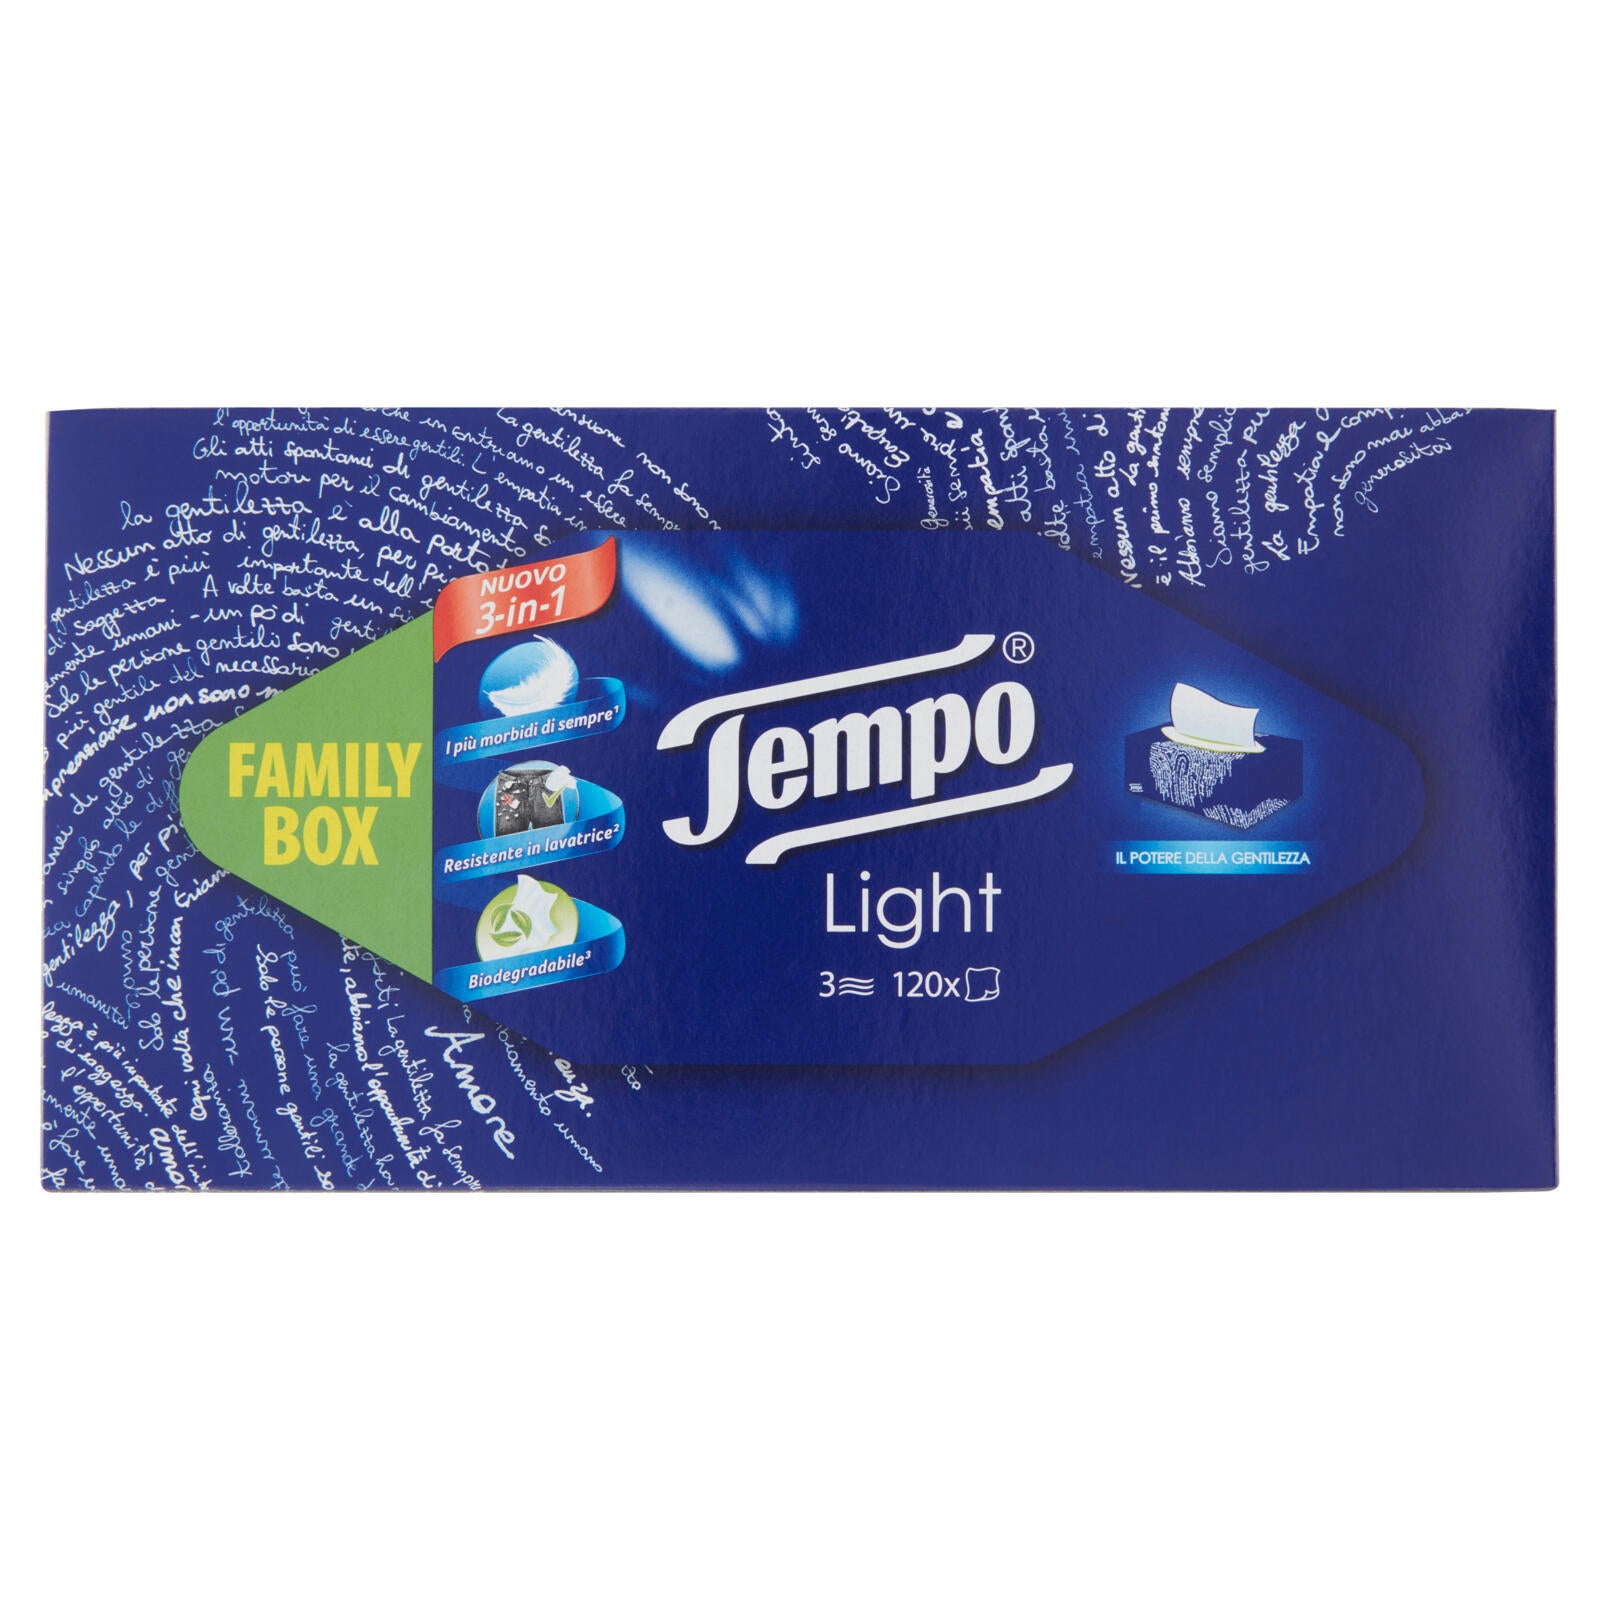 Tempo Family Box Light Fazzoletti 3 Veli 120 pz ->